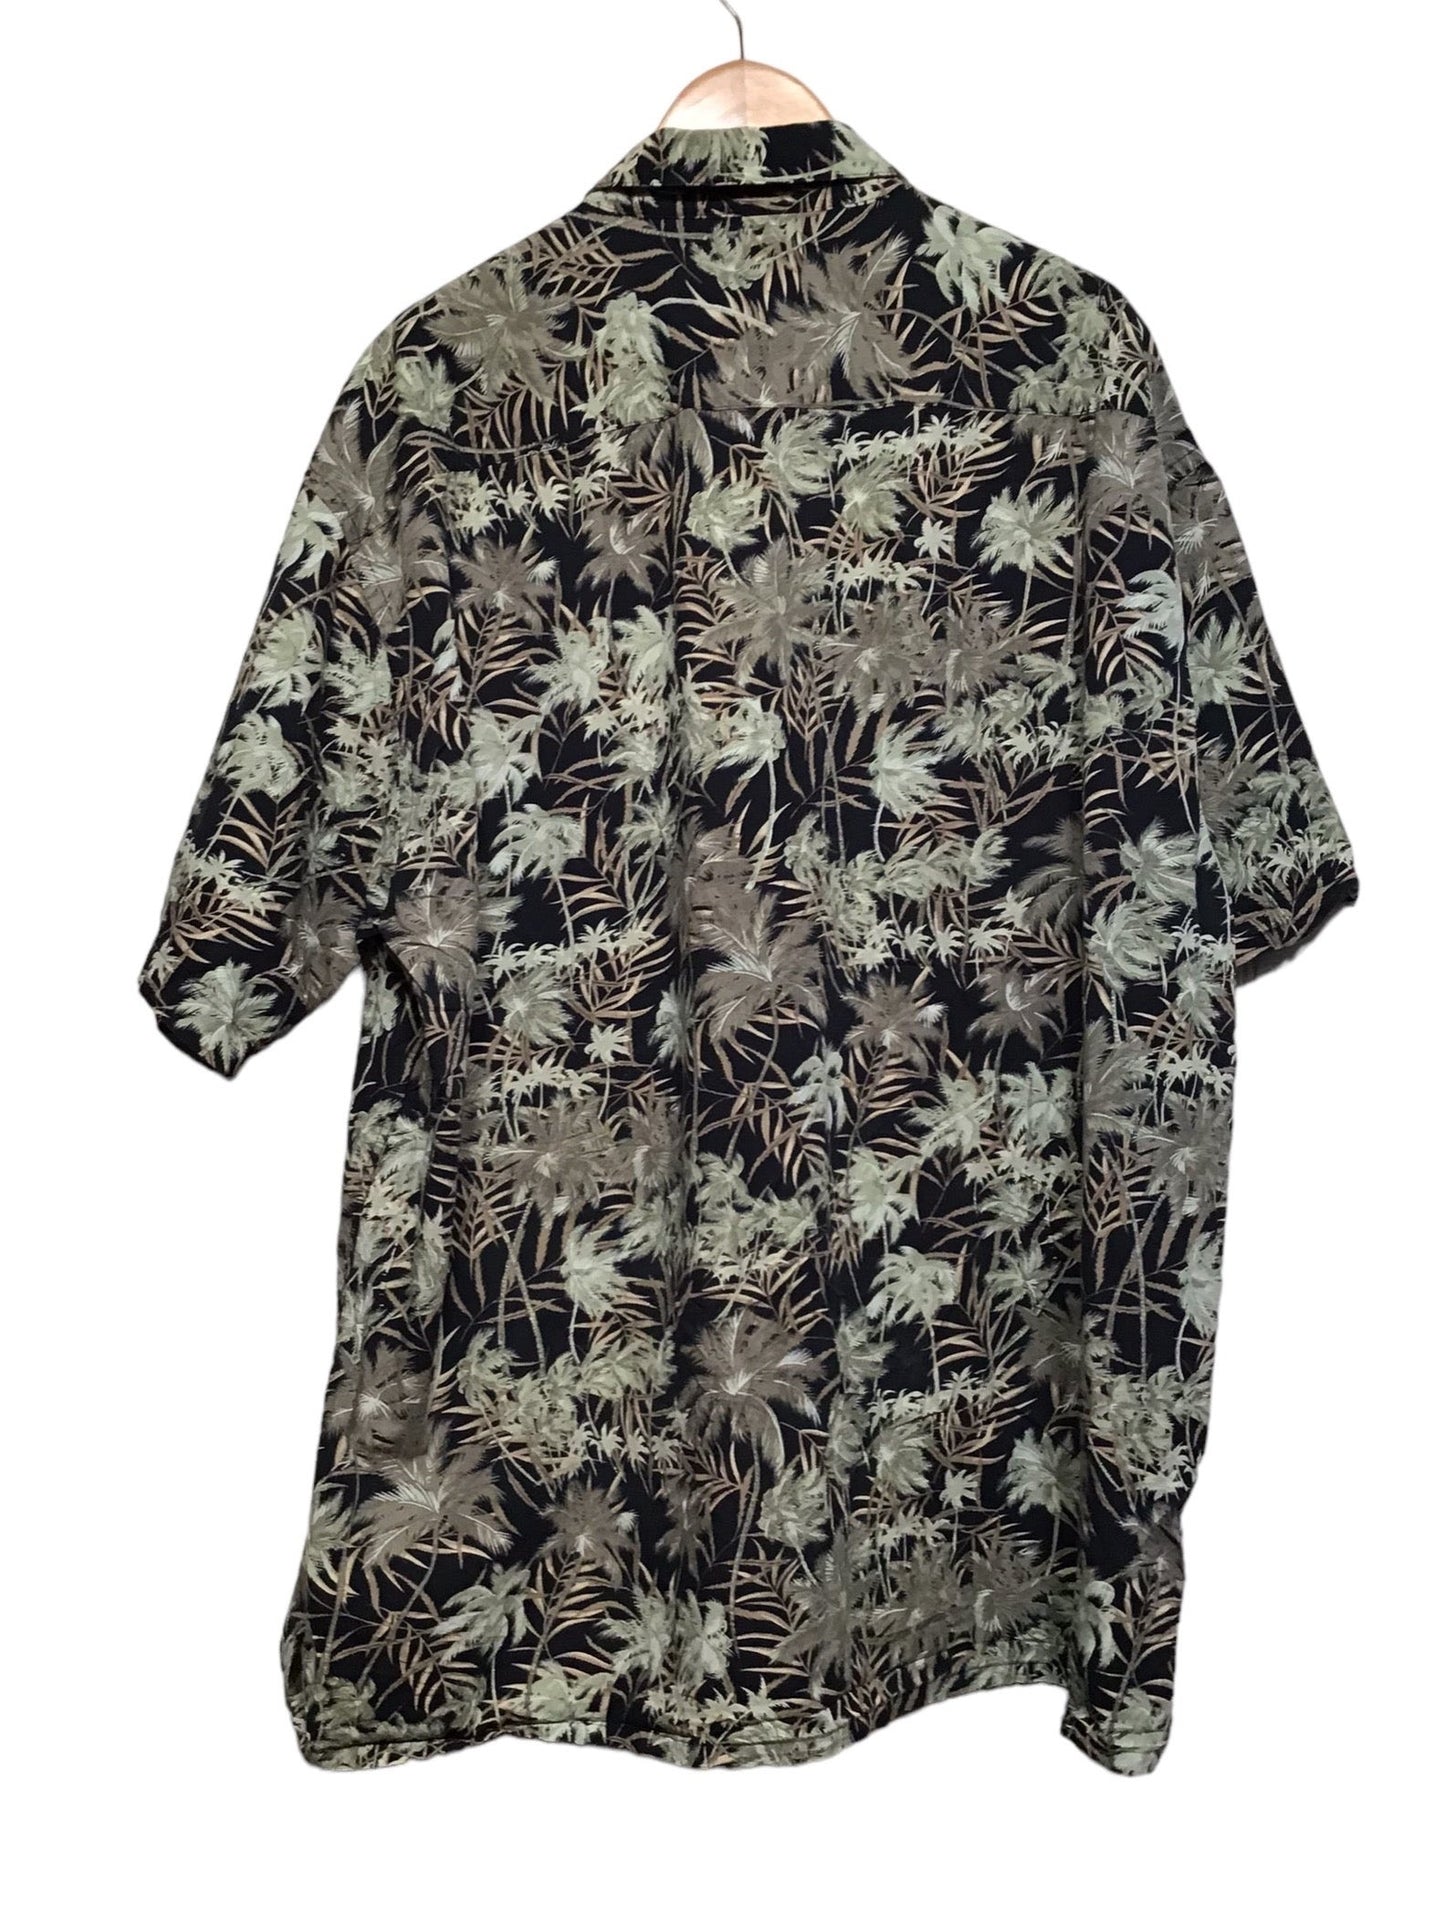 Pierre Cardin Shirt (Size XXL)